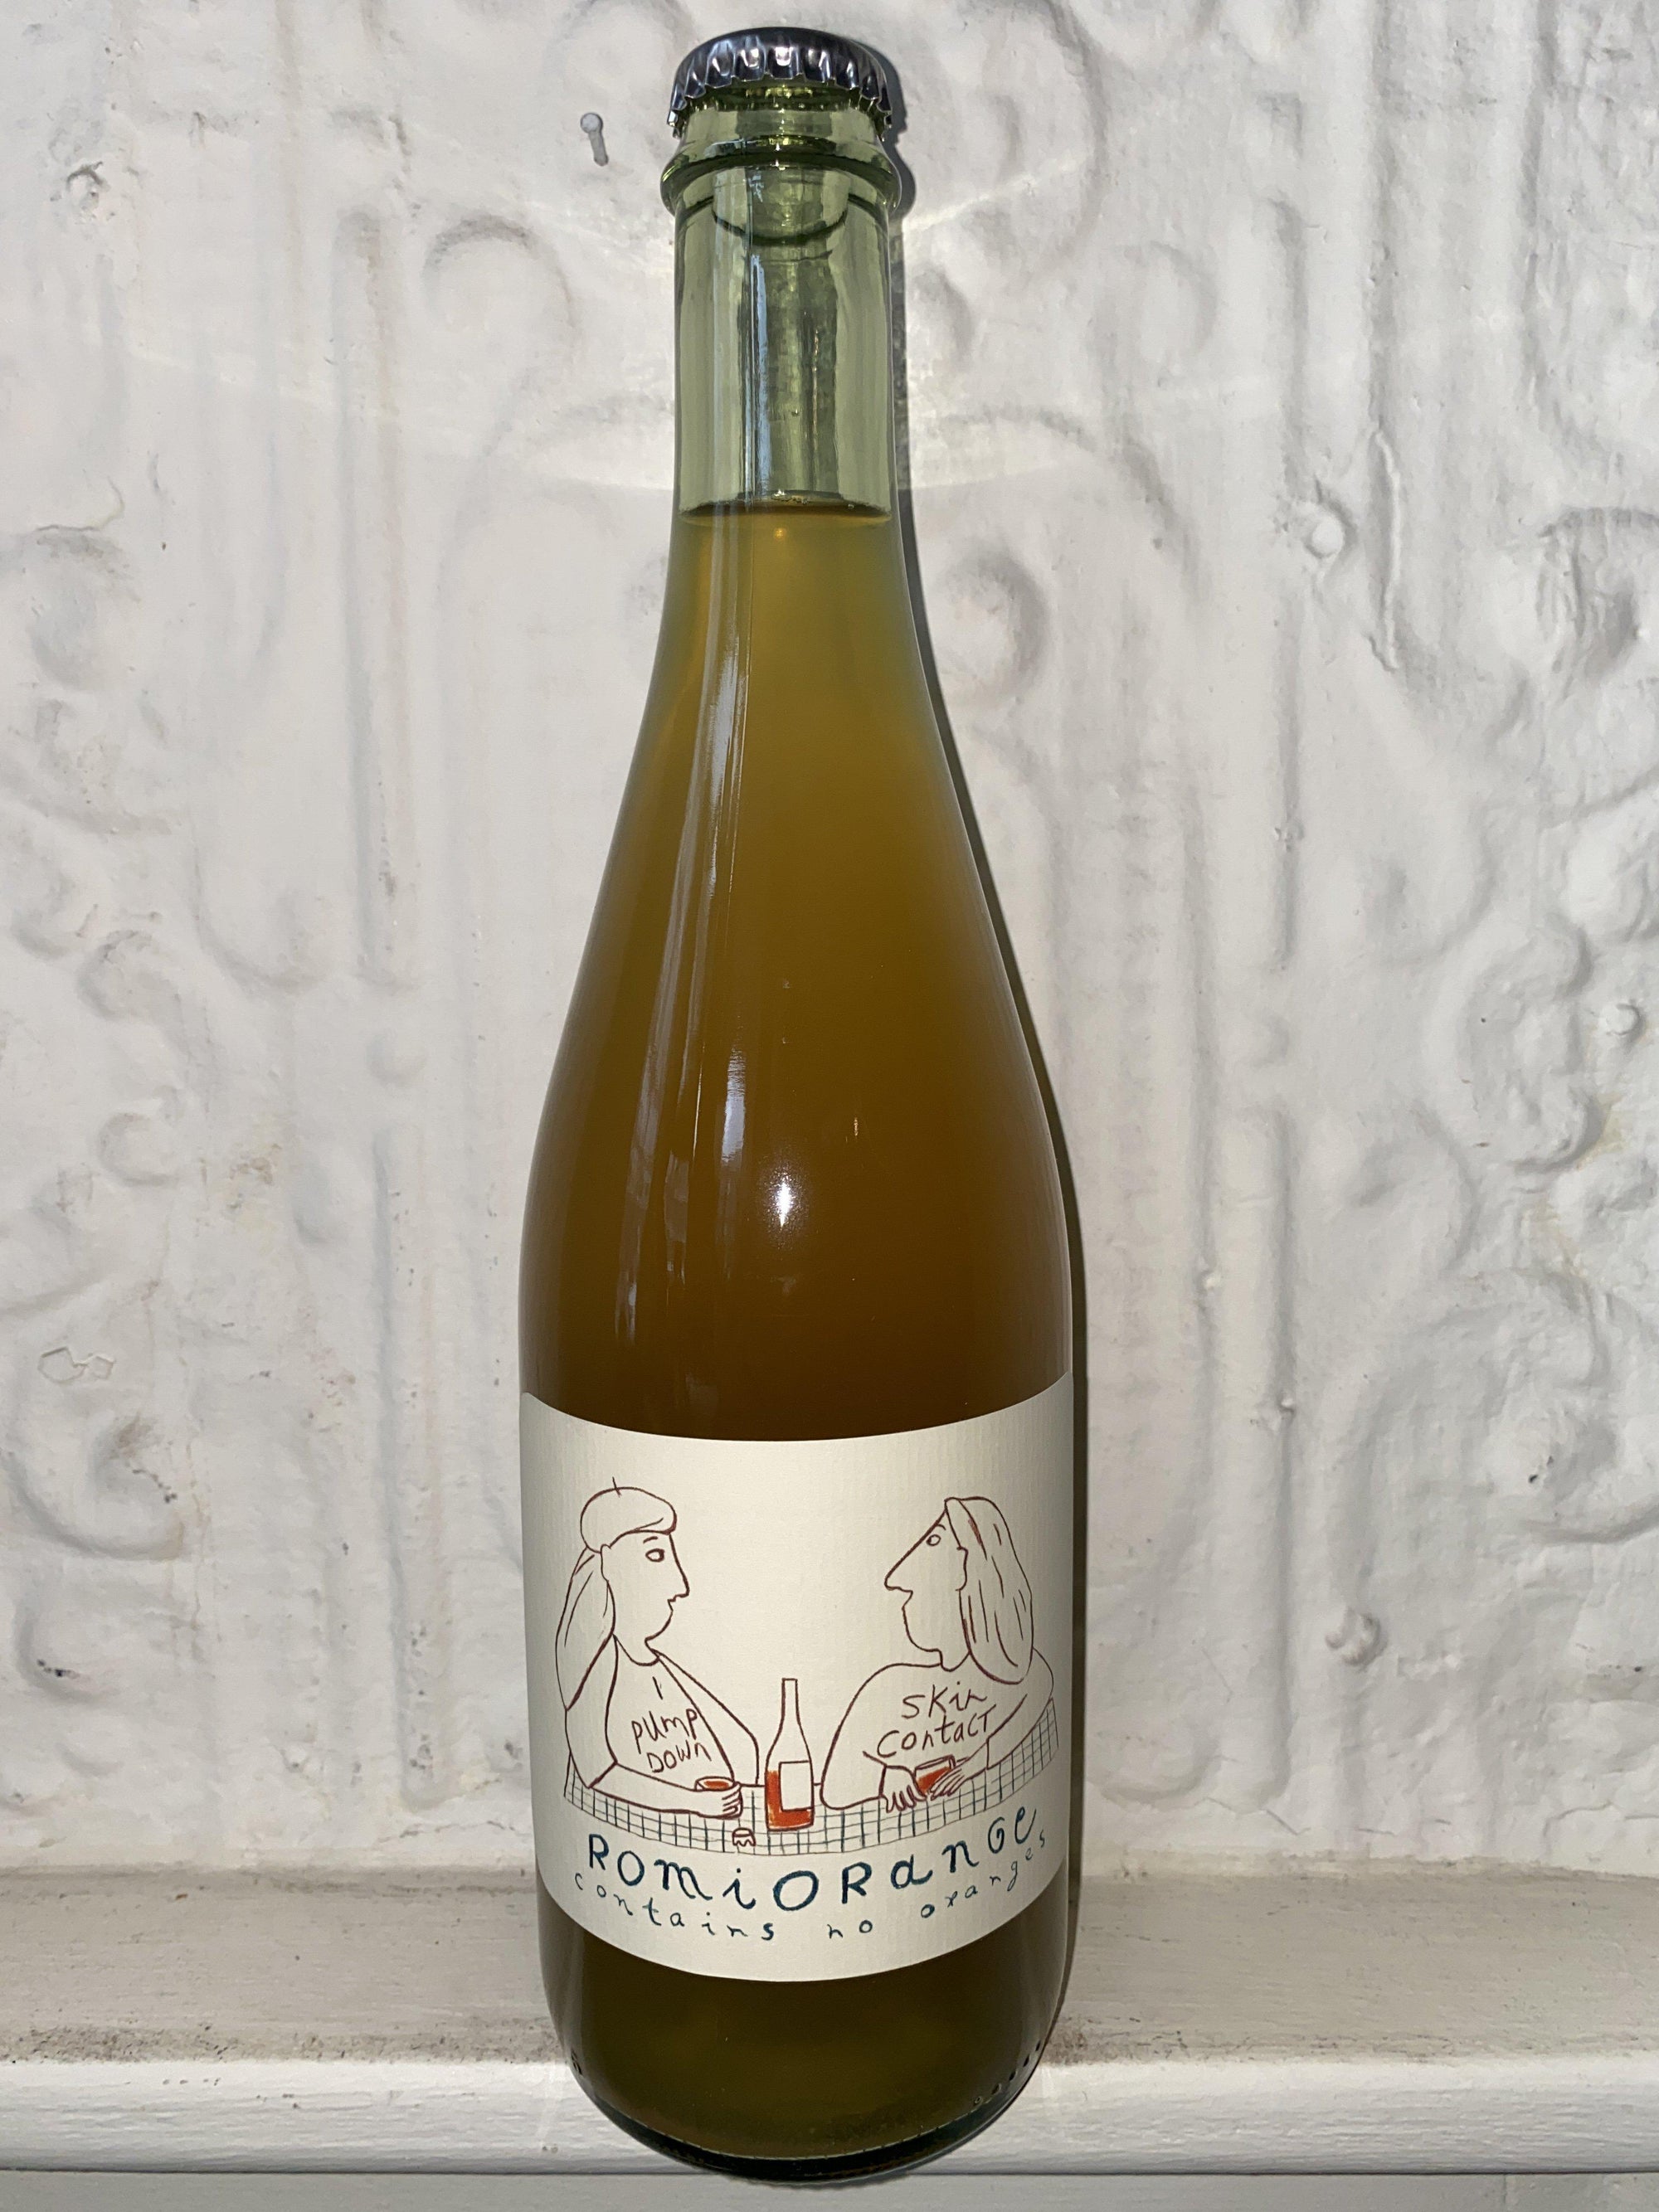 Romi Orange Sauvignon Blanc, Echeverria 2020 (Curico Valley, Chile)-Wine-Bibber & Bell